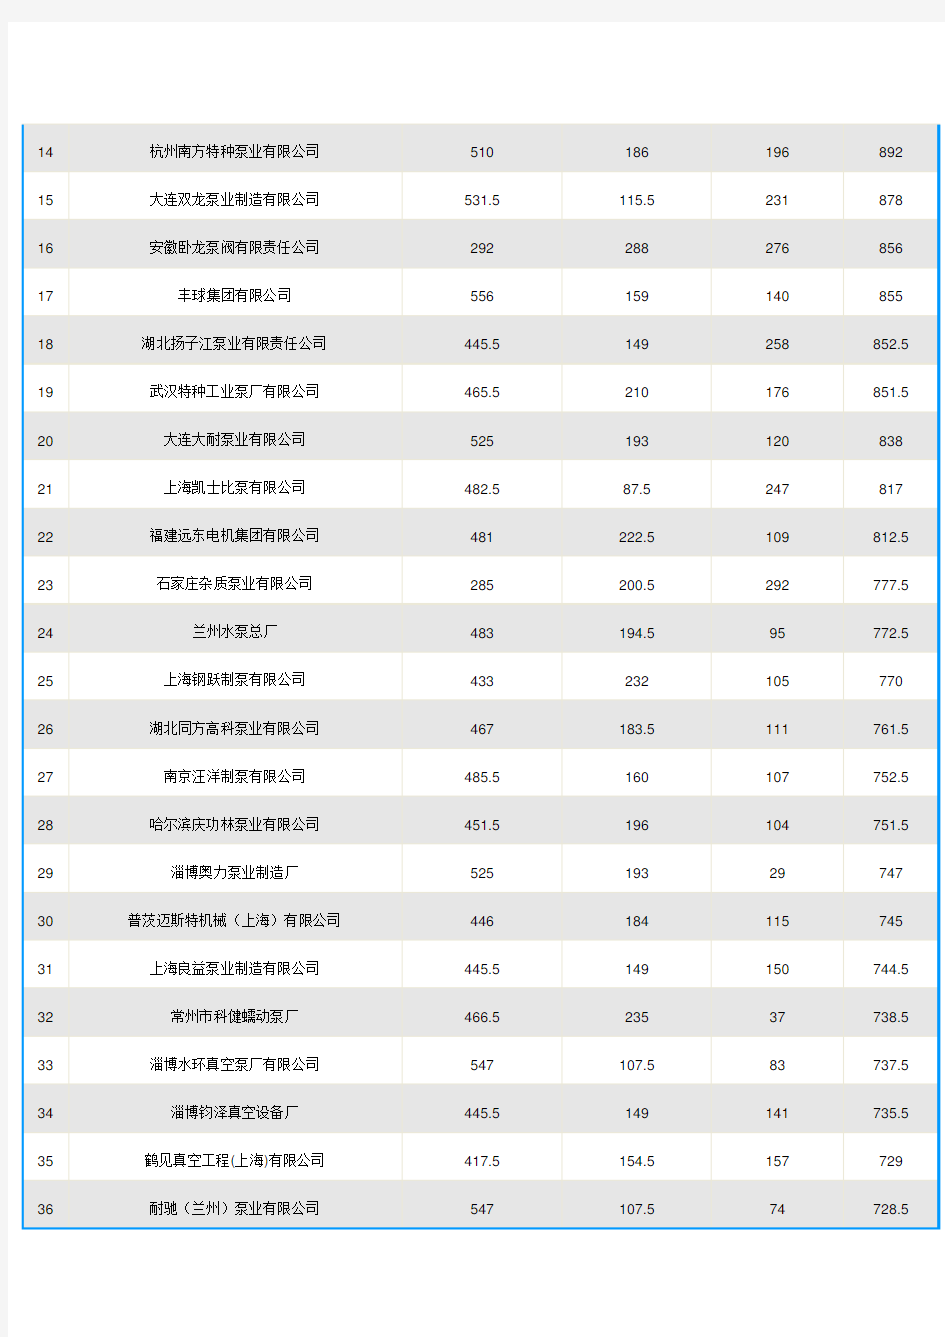 2010年中国泵业品牌供应商五十强